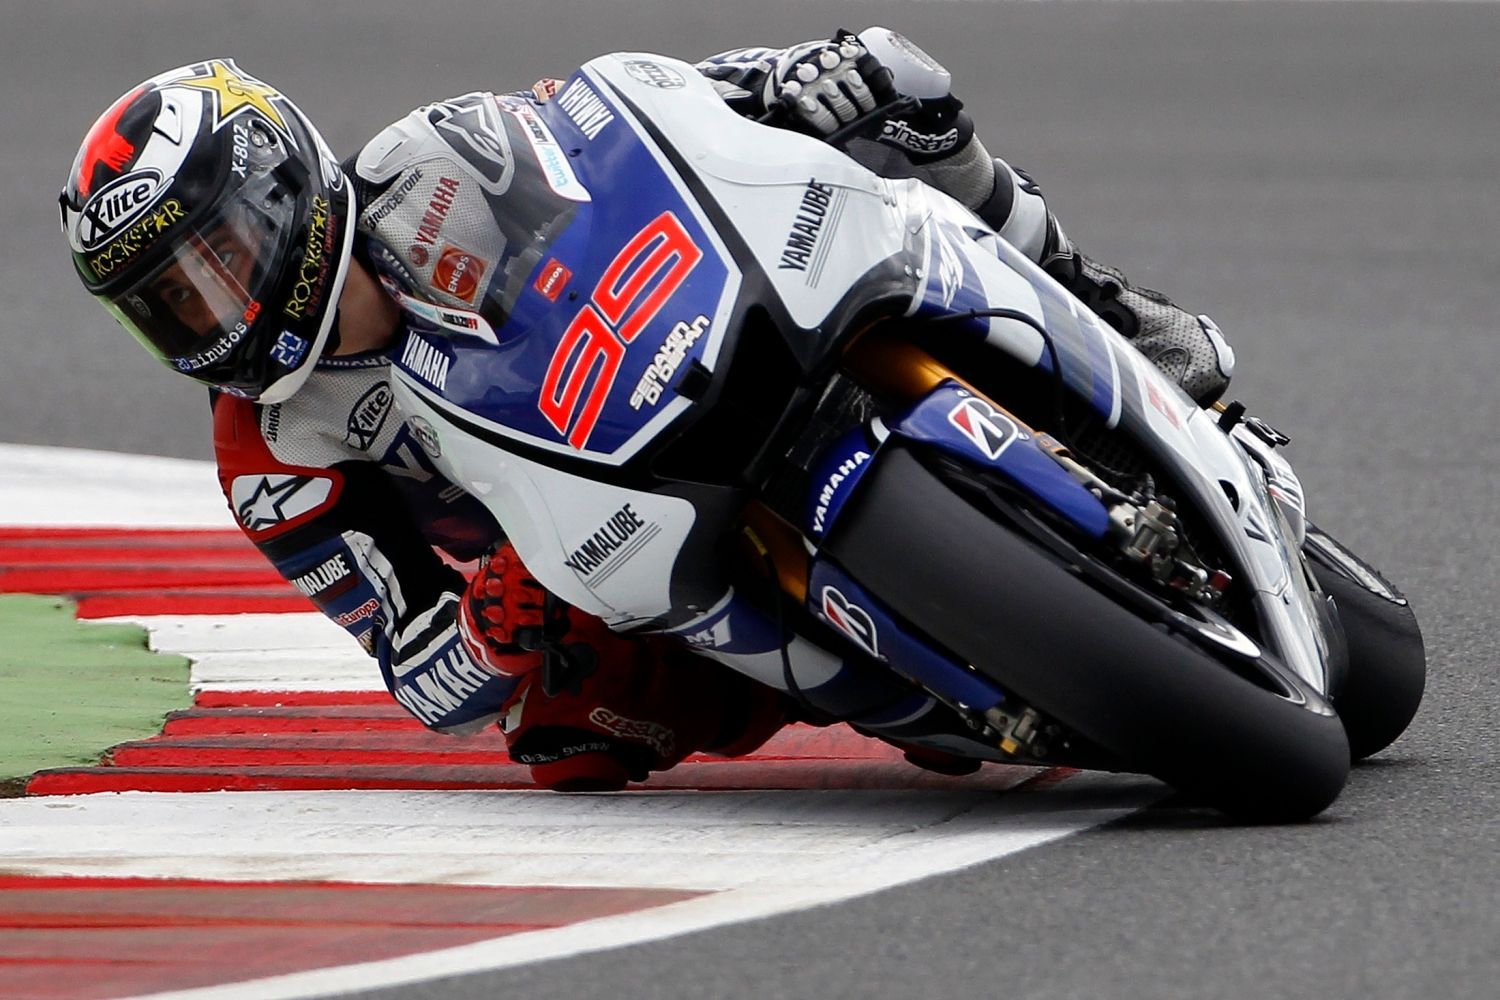 Španělský motocyklový jezdec Yamahy, Jorge Lorenzo v kategorii MotoGP na Grand Prix Velké Británie 2012